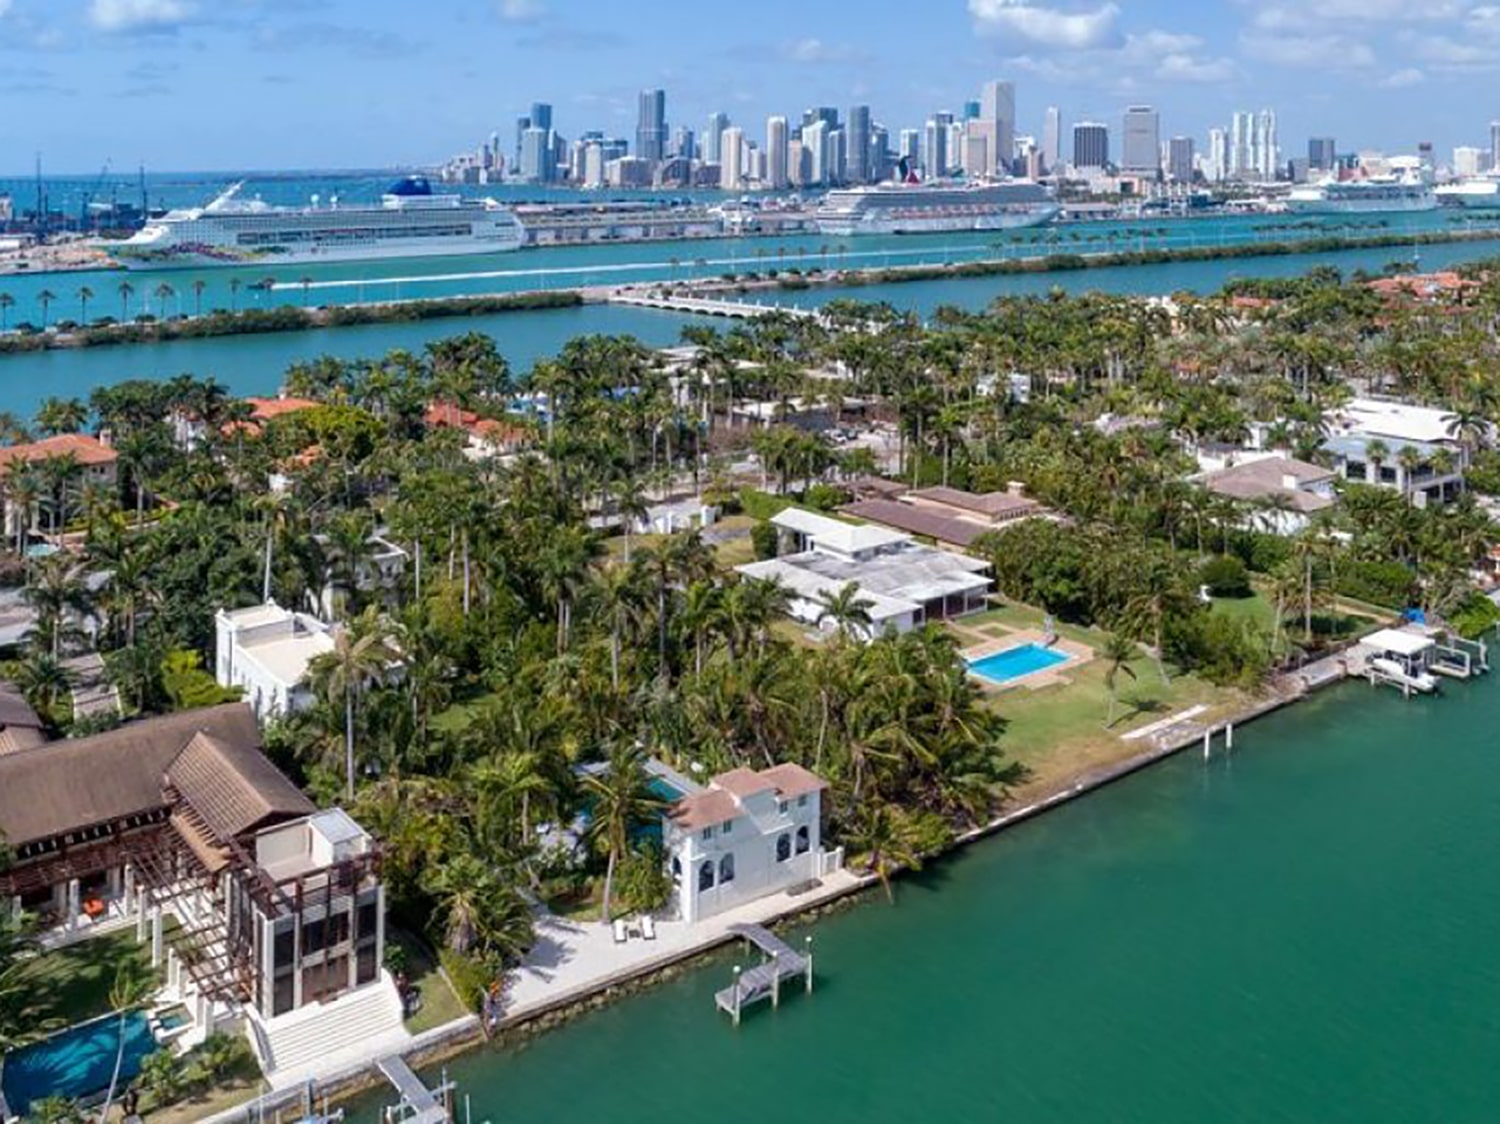 Al Capone's Miami Beach home